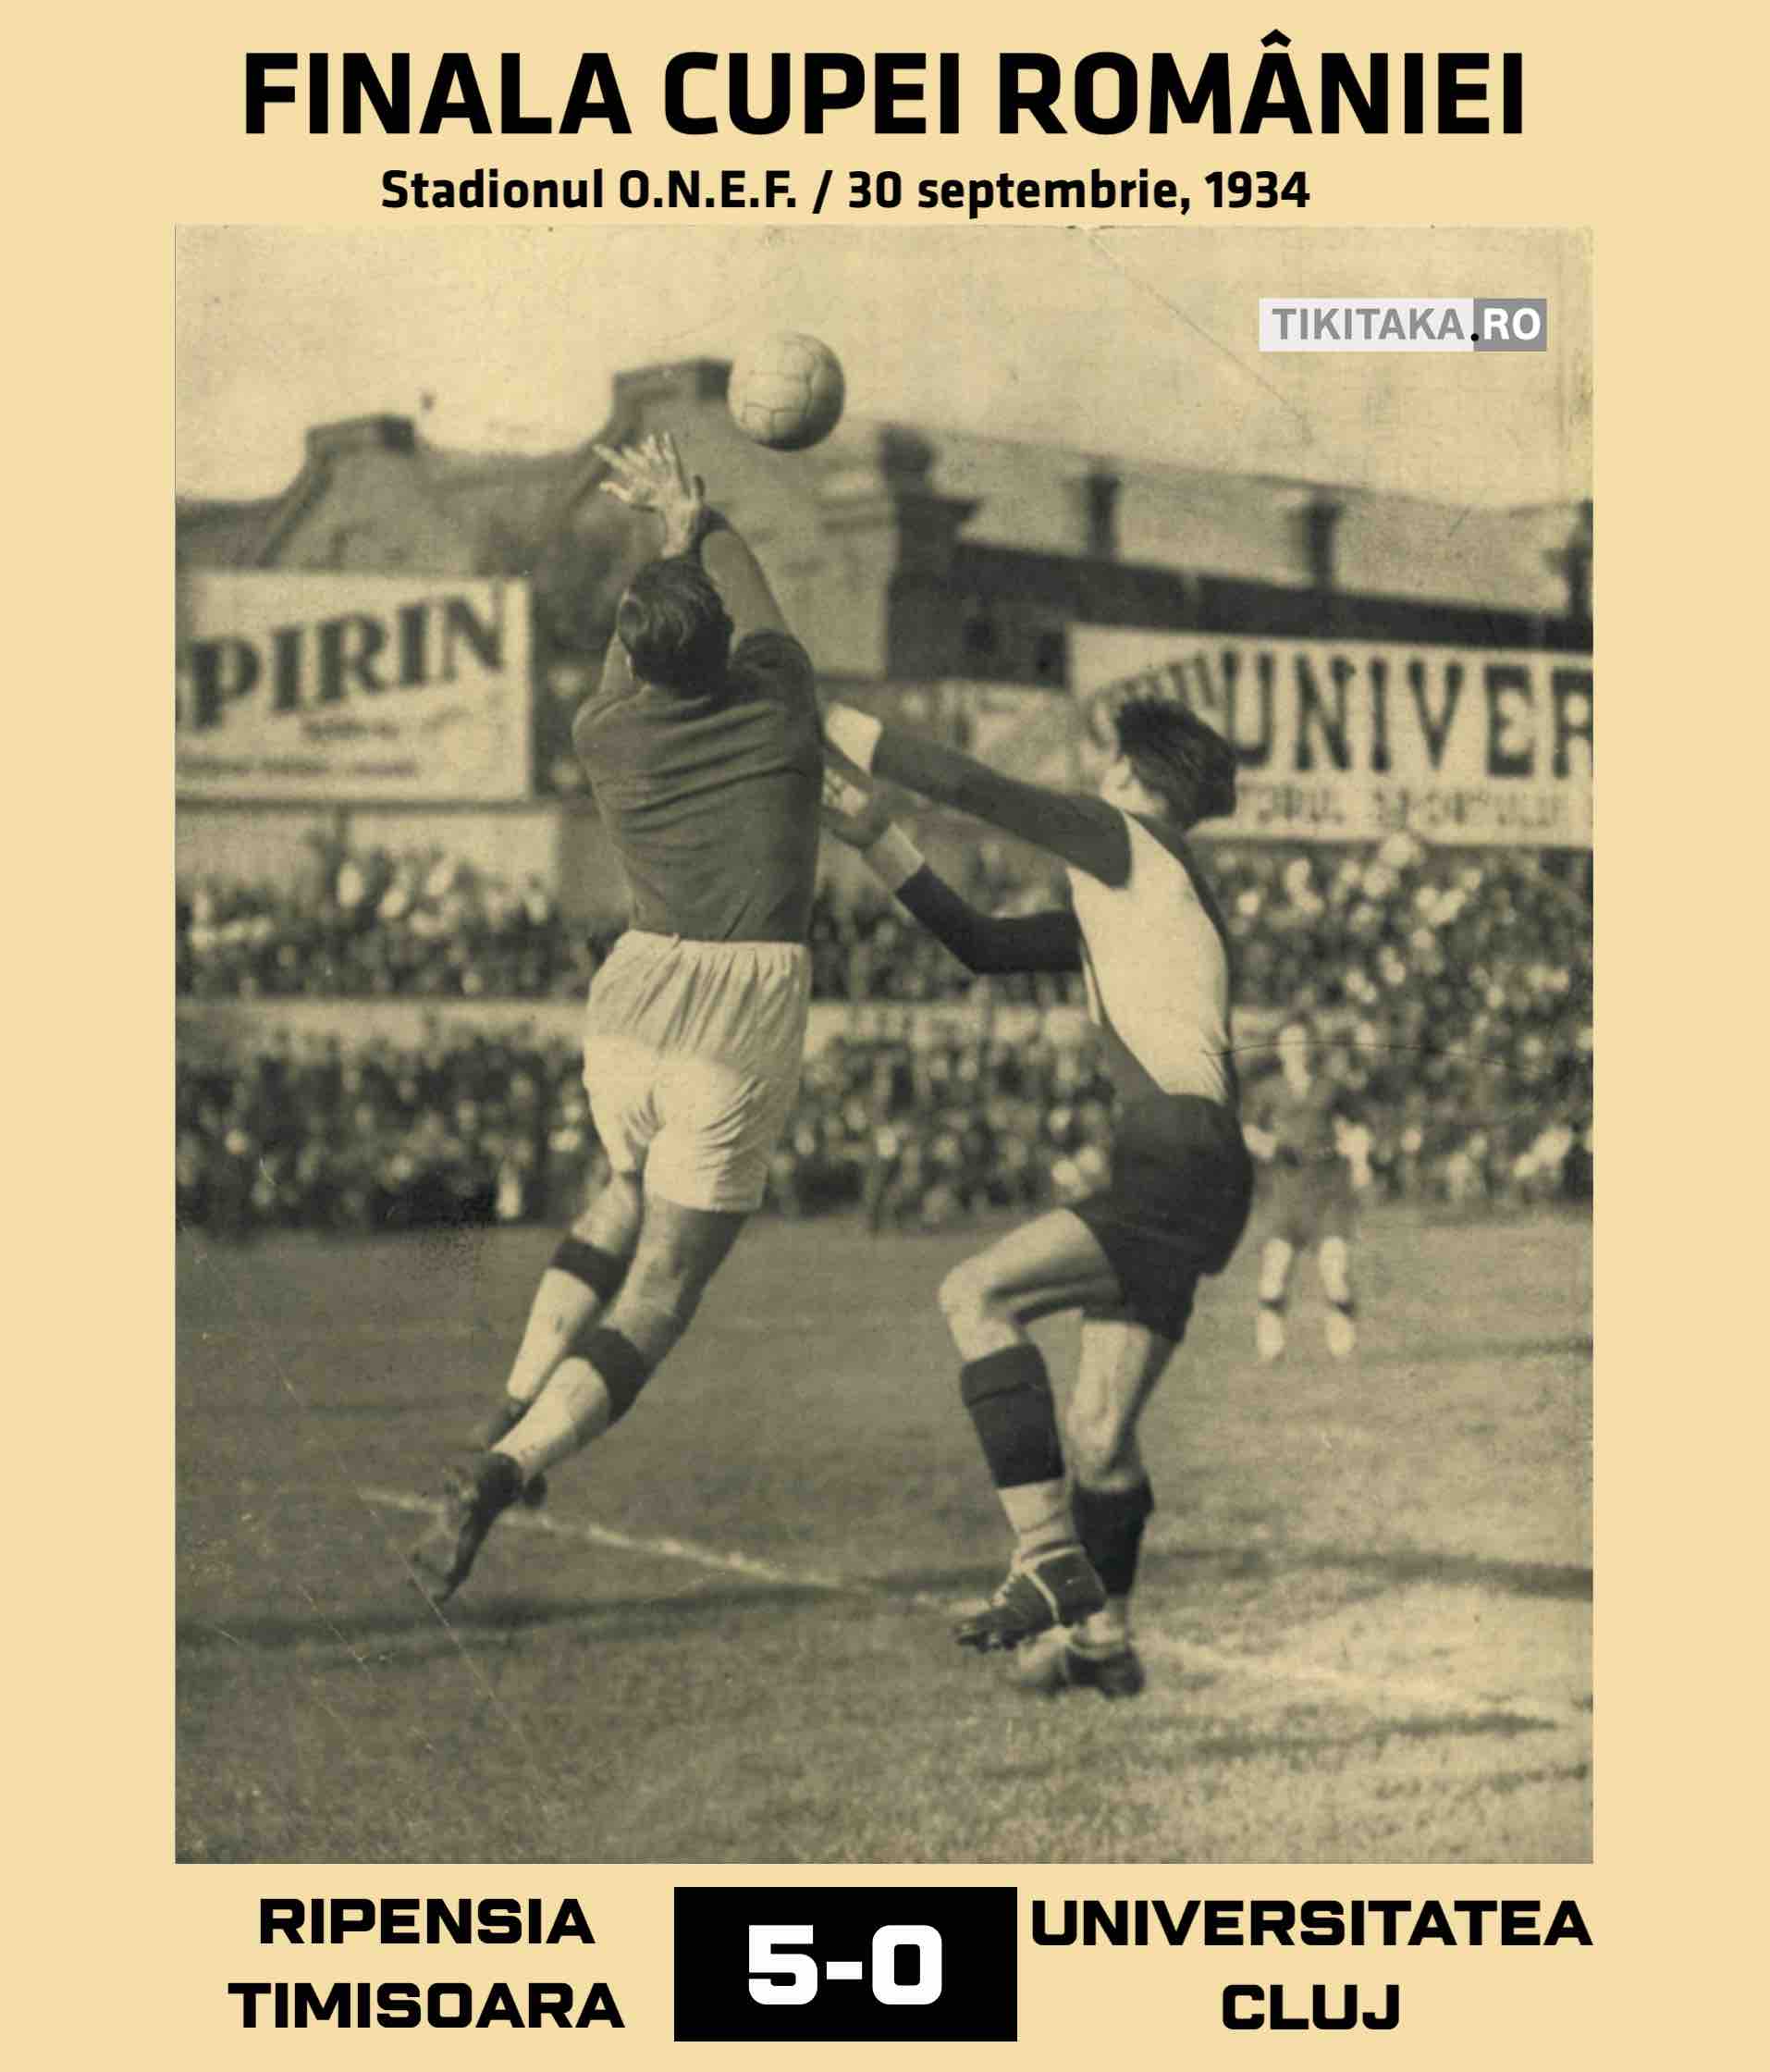 Finala Cupei României 1934